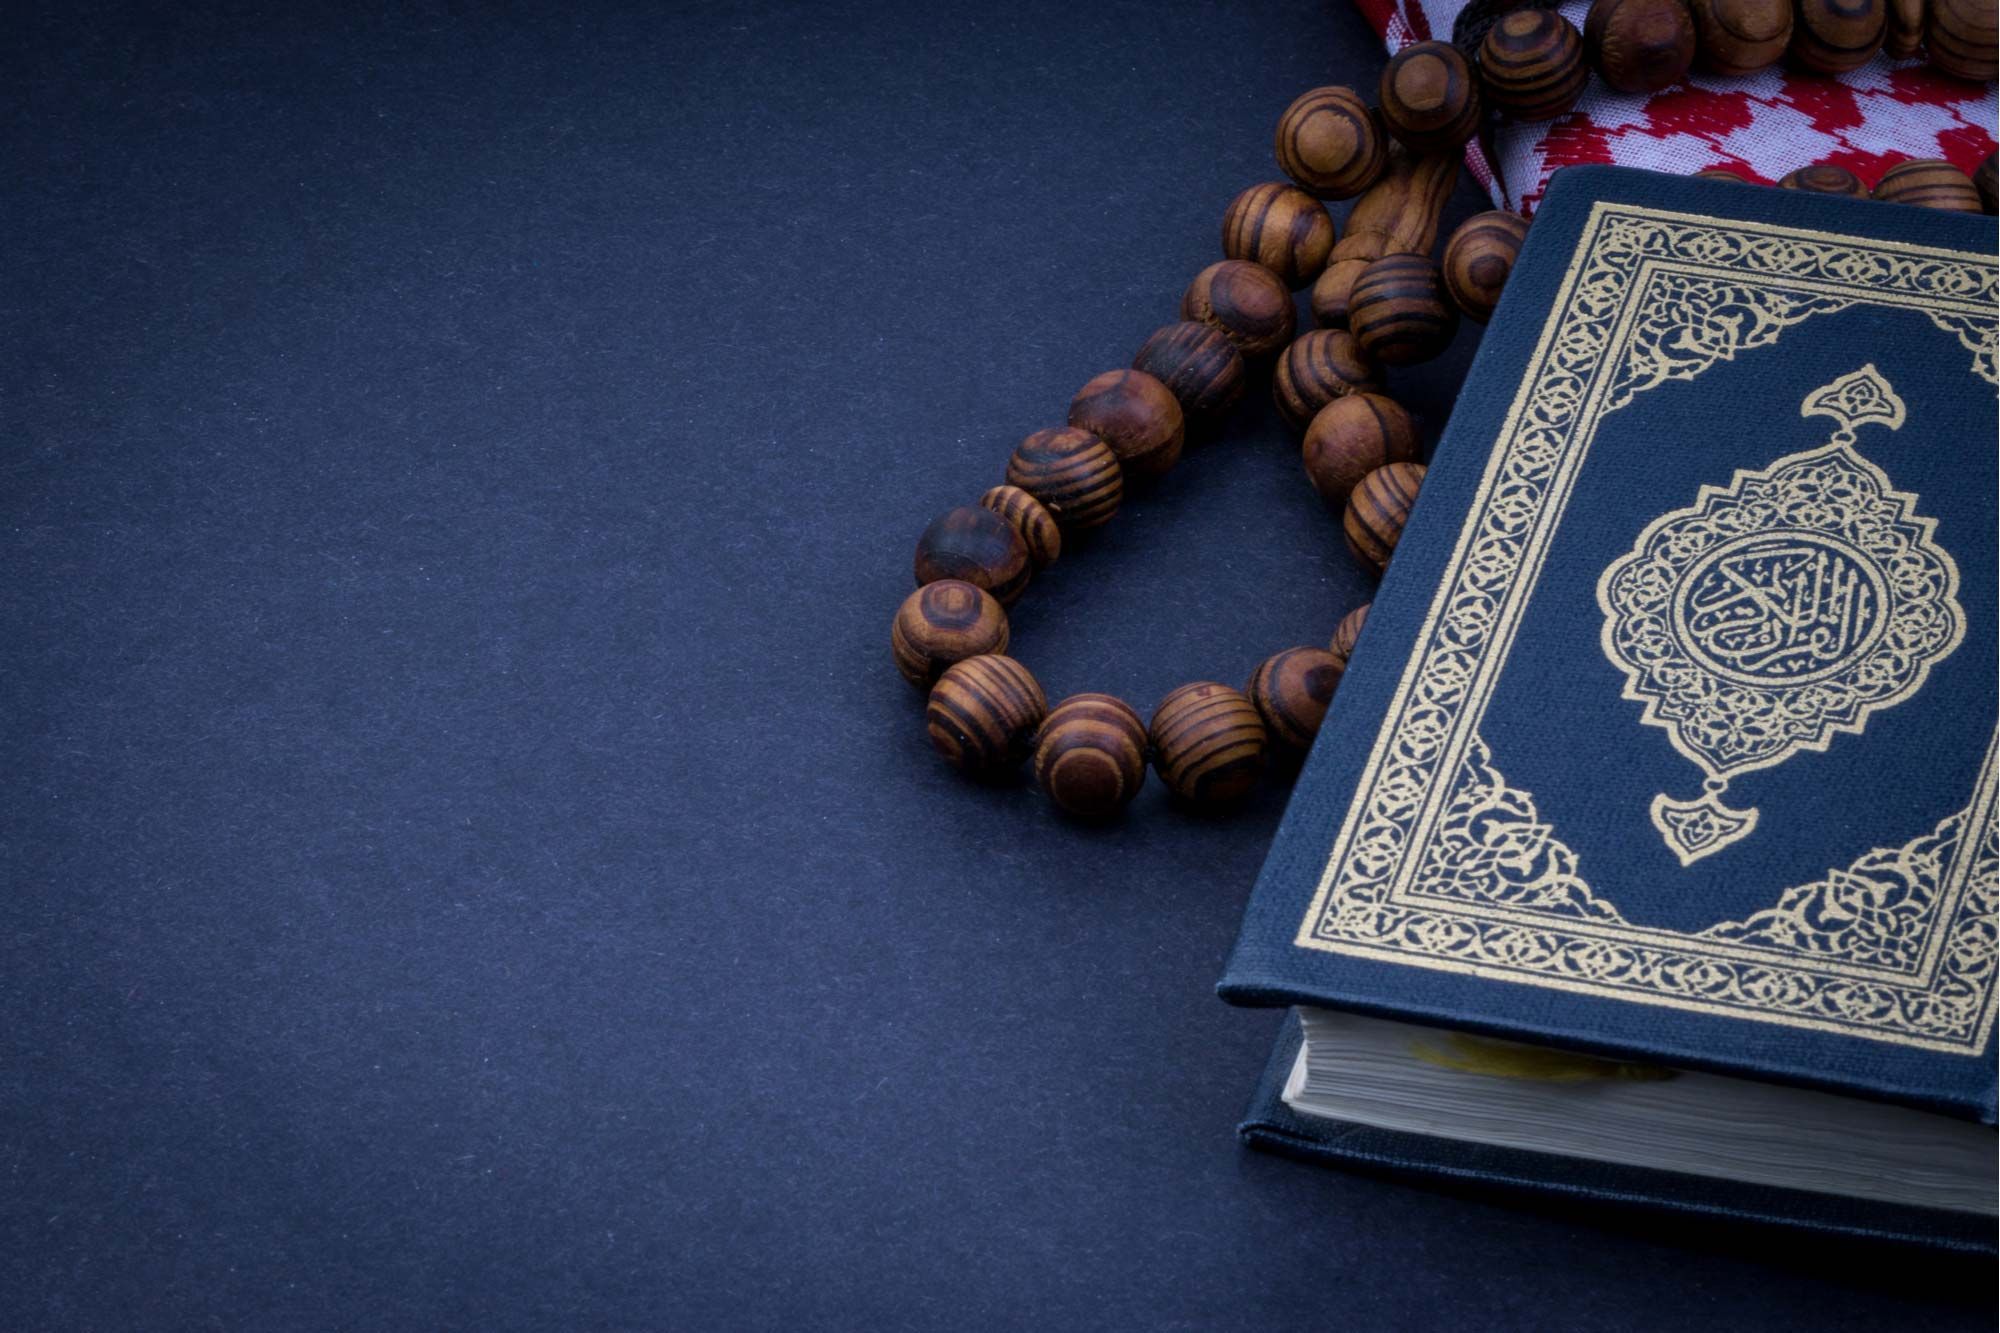 Hãy bắt đầu chuỗi bài đọc Quran trong tháng Ramadan với sự hướng dẫn đầy đủ và chân thành của chúng tôi. Từ cách chọn bản sao, đọc tập trung đến các lệnh tajweed quan trọng. Chúng tôi đã chuẩn bị tất cả, chỉ để giúp cho bạn có được một kỳ Ramadan thật tuyệt vời!